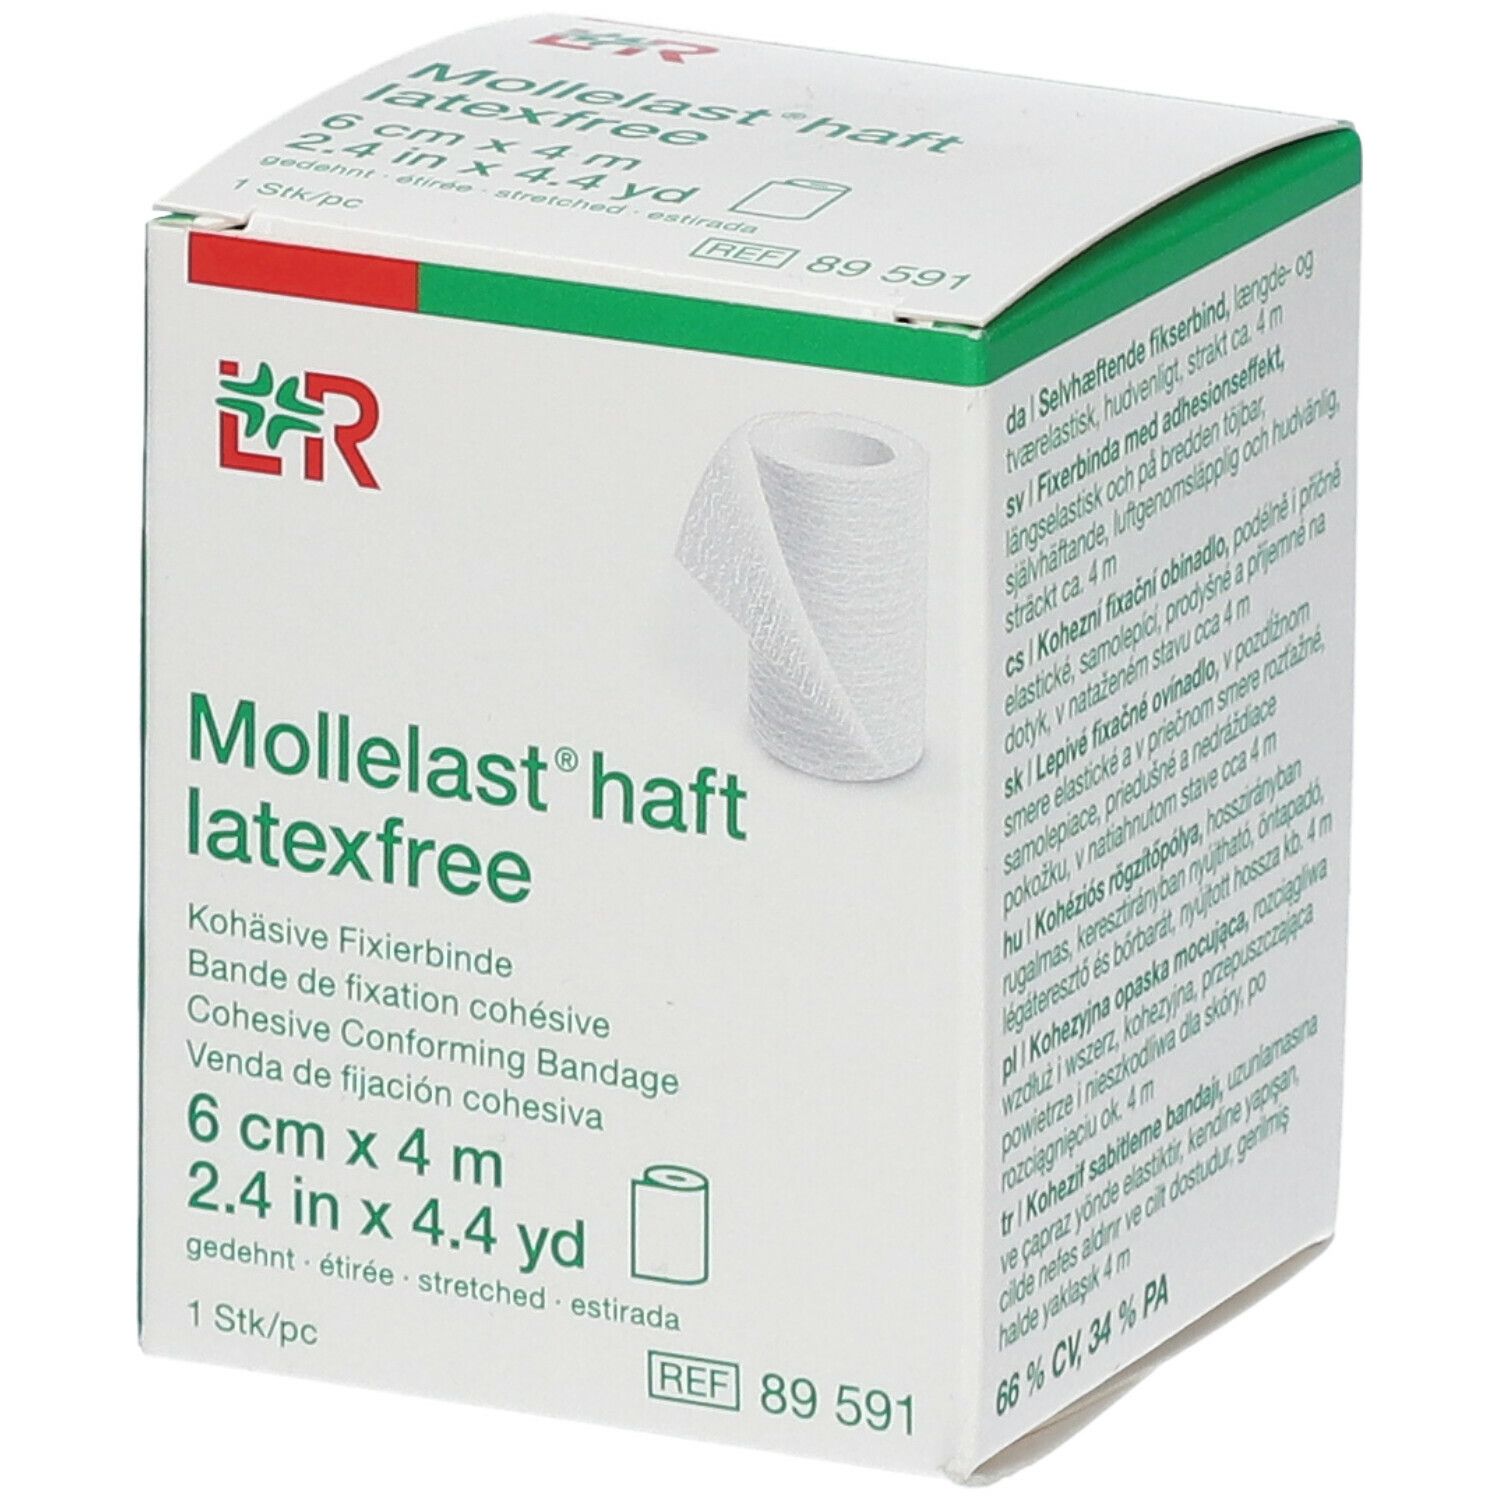 L&R Mollelast® haft Bande de fication cohésive 6 cm x 4 m